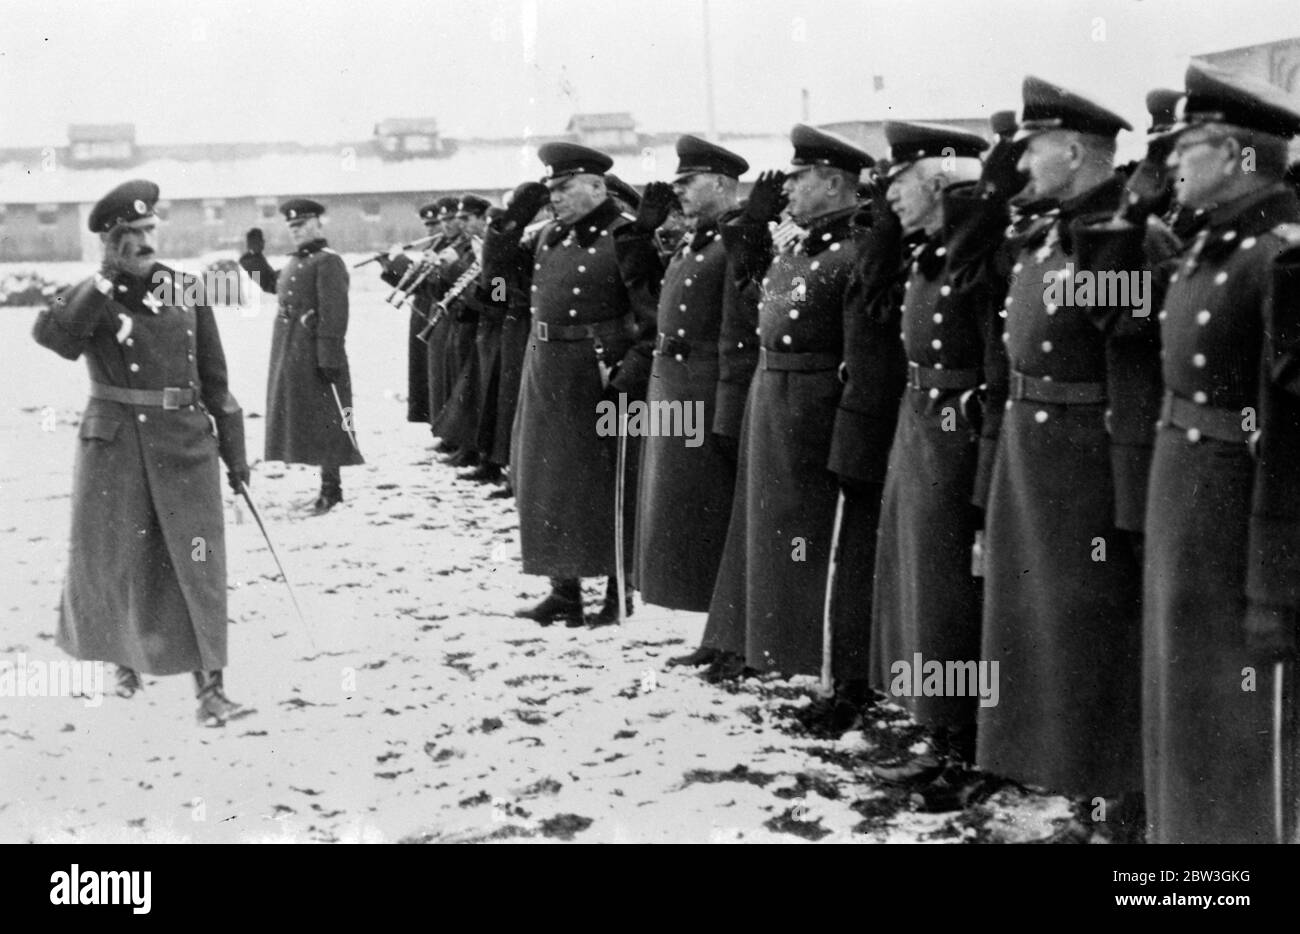 König Boris Bewertungen Offiziersregiment im Schnee . König Boris von Bulgarien trotzte dem Schnee, um das 38. Offiziersregiment der Bulgarischen Akademie zu ihrem zwanzigsten Jahrestag zu überprüfen. Das Regiment stellt Männer für die Kaisergarde zur Verfügung. Foto zeigt, der König Überprüfung der 38 Offiziersregiment im Schnee in Sofia. 19 Dezember 1935 Stockfoto